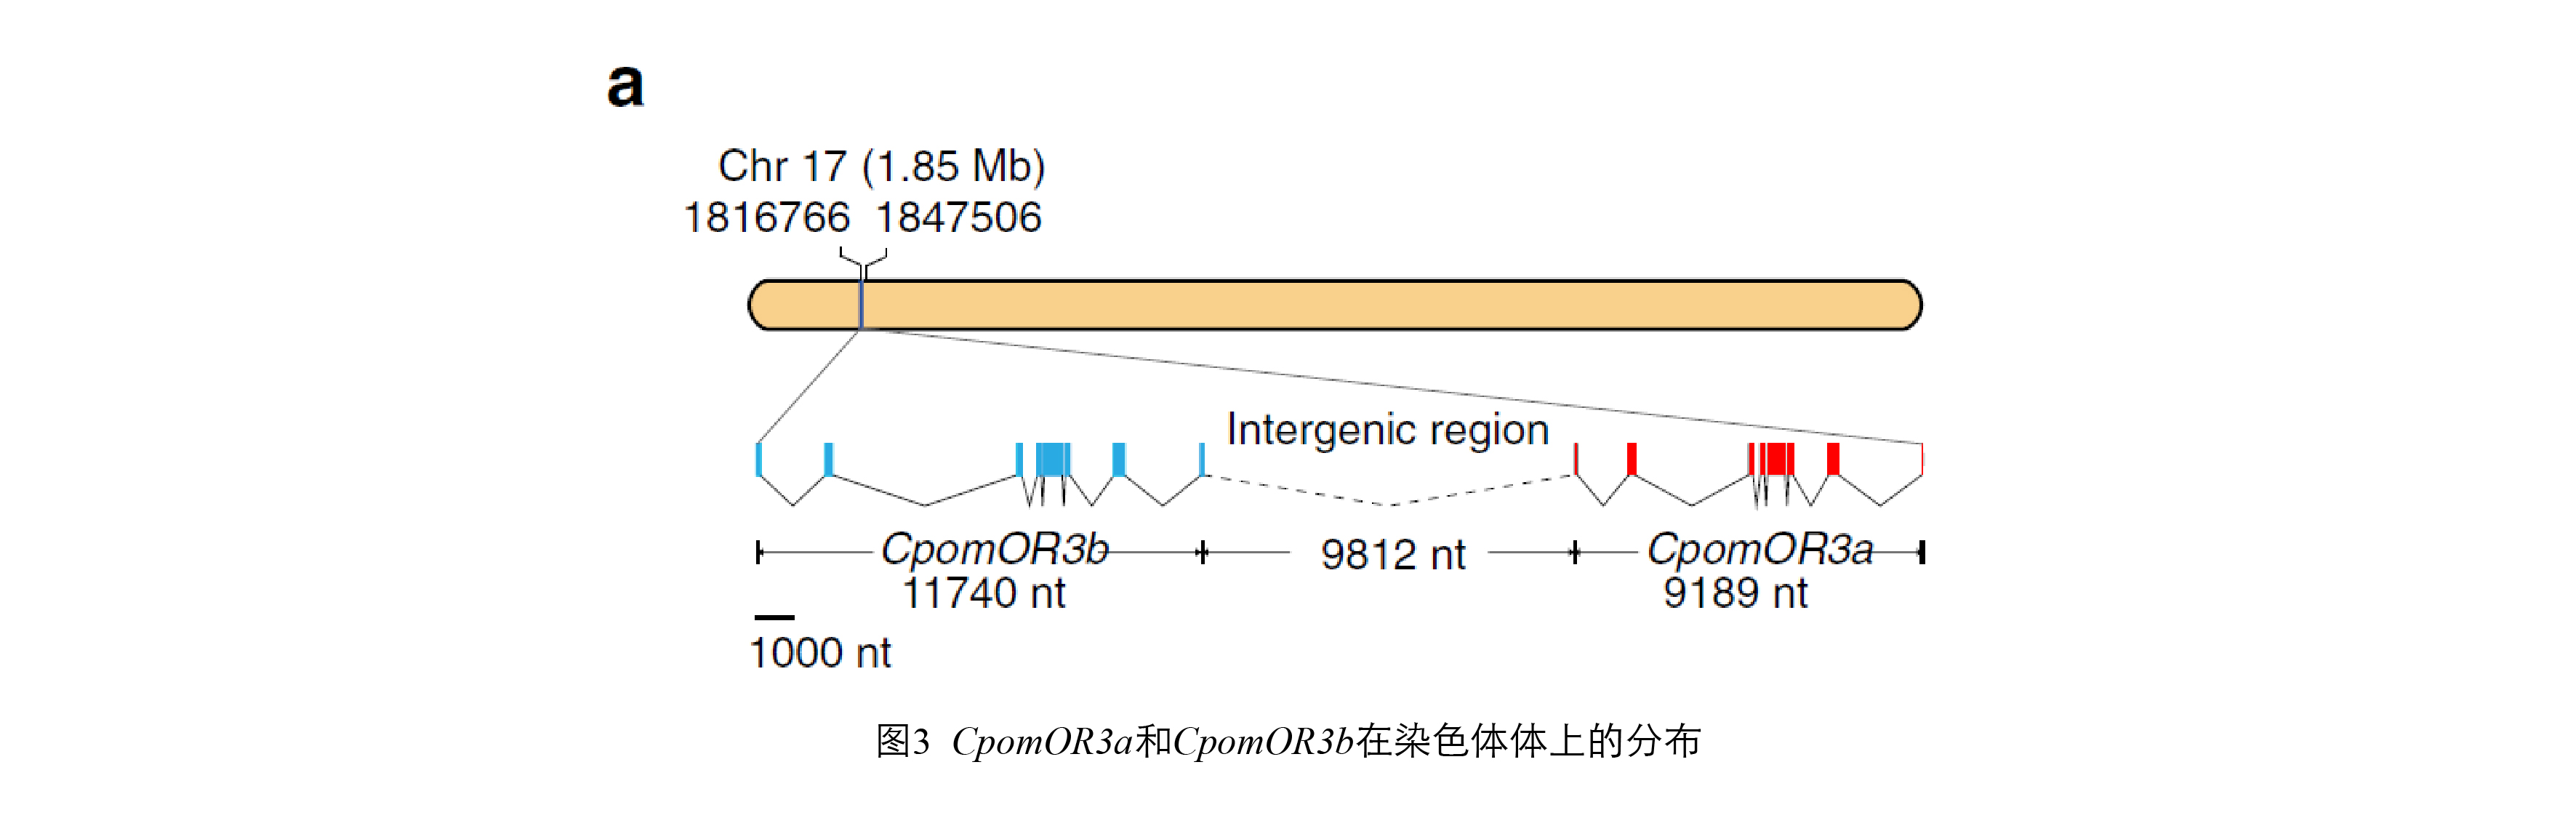 图3. CpomOR3a和CpomOR3b在染色体体上的分布